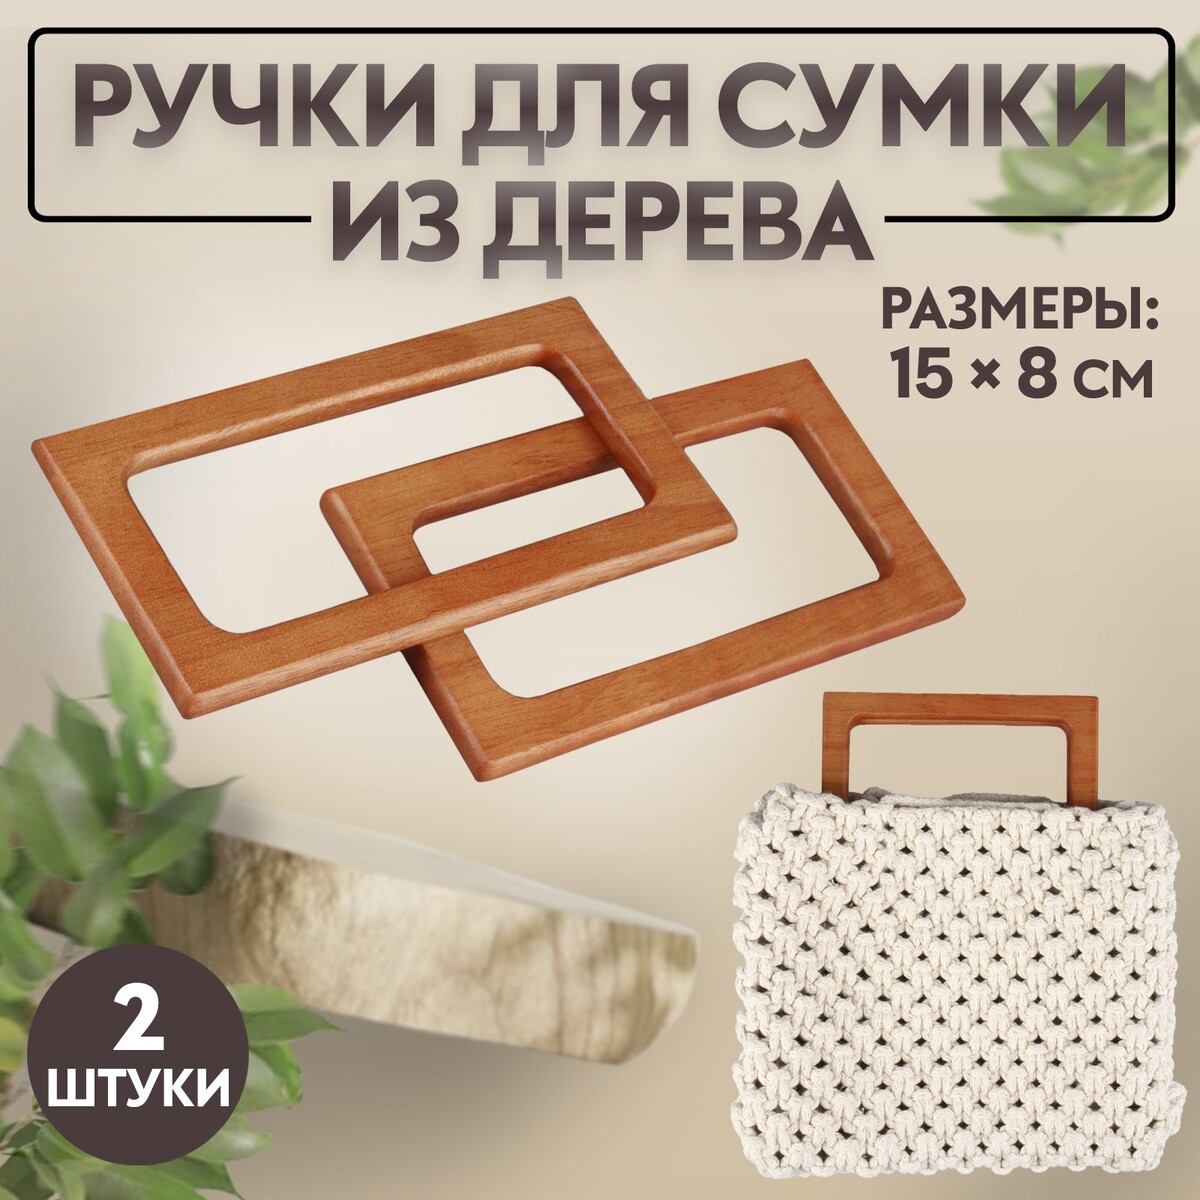 Ручки для сумки деревянные, 15 × 8 см, 2 шт, цвет светло-коричневый ручки для сумки 2 шт 44 5 × 4 5 см